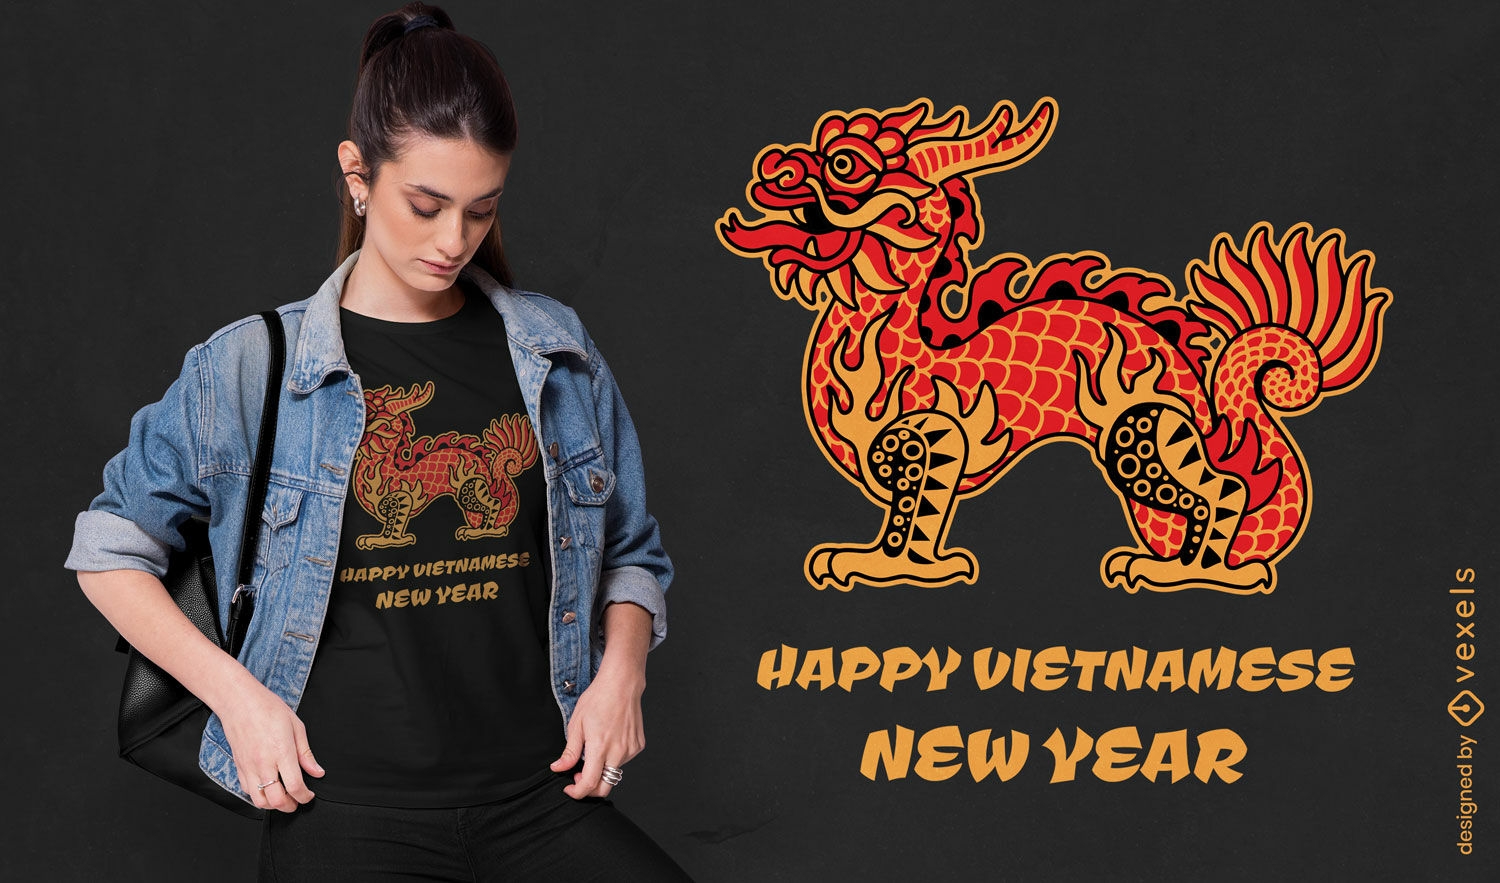 Diseño de camiseta feliz año nuevo vietnamita.